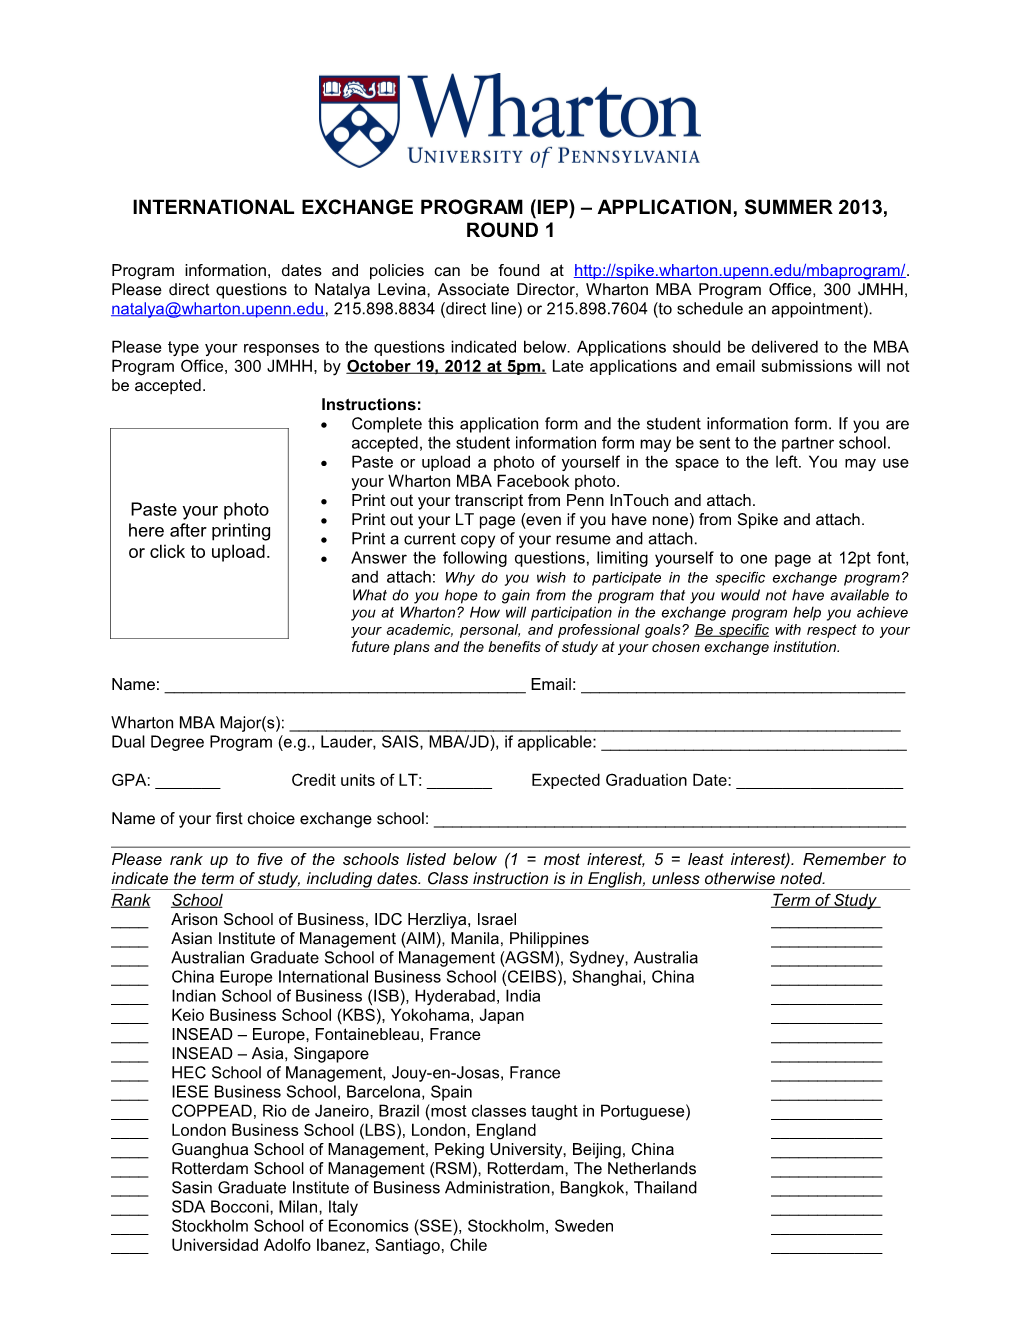 International Exchange Program (Iep) Application, Summer 2013, Round 1